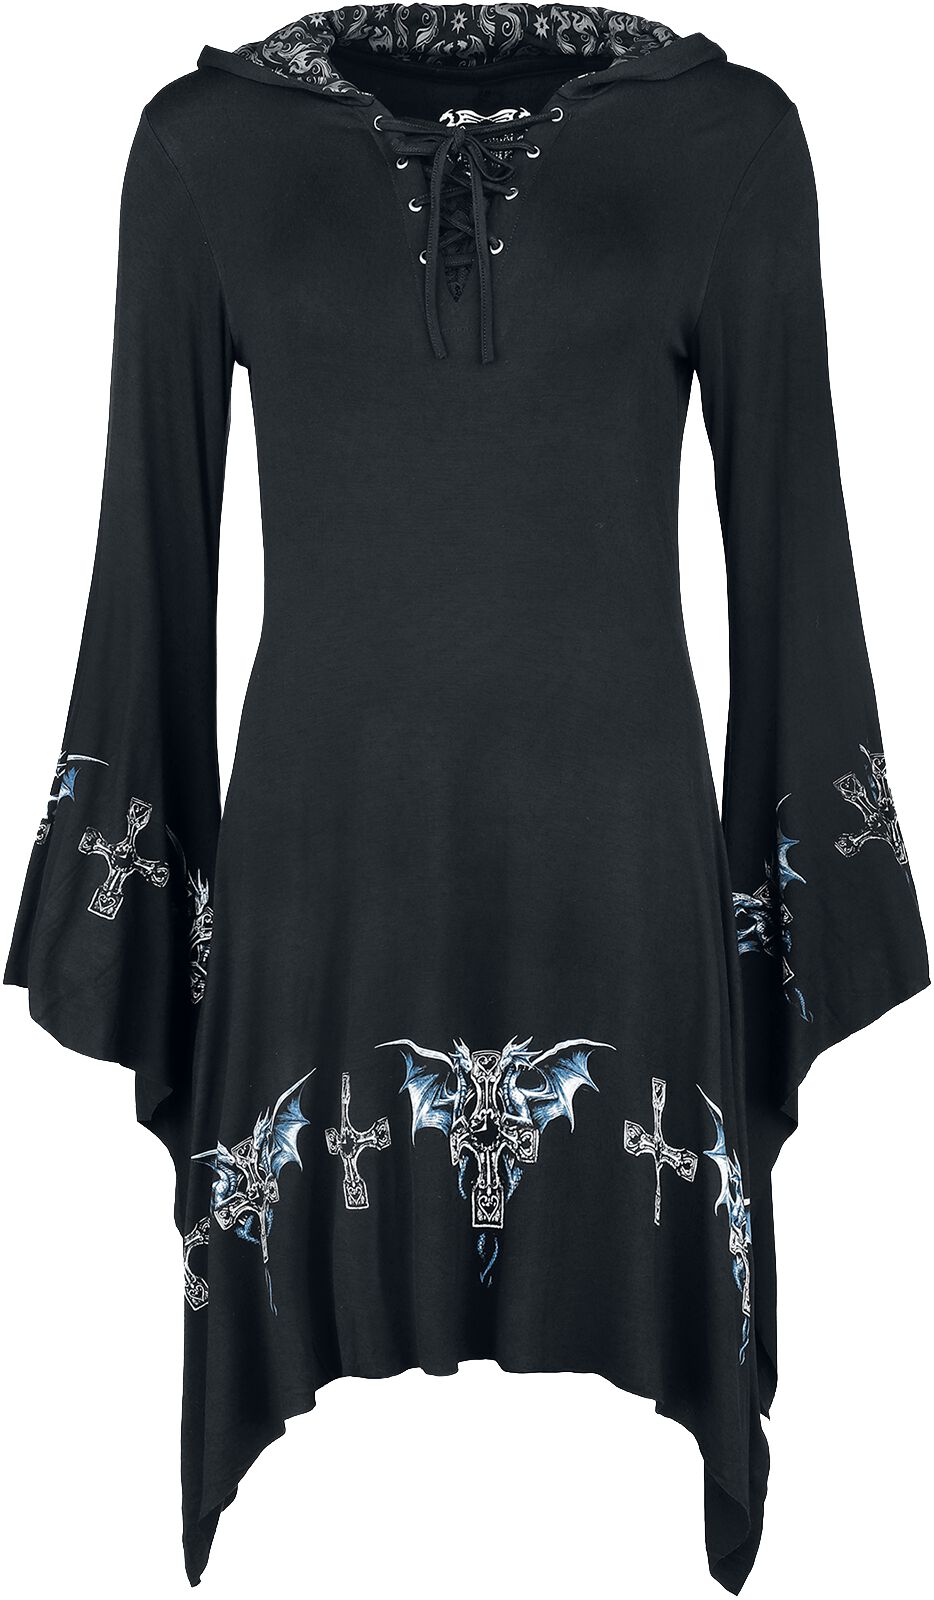 Gothicana by EMP - Gothicana X Anne Stokes -  Short Dragon Dress - Kurzes Kleid - schwarz - EMP Exklusiv!